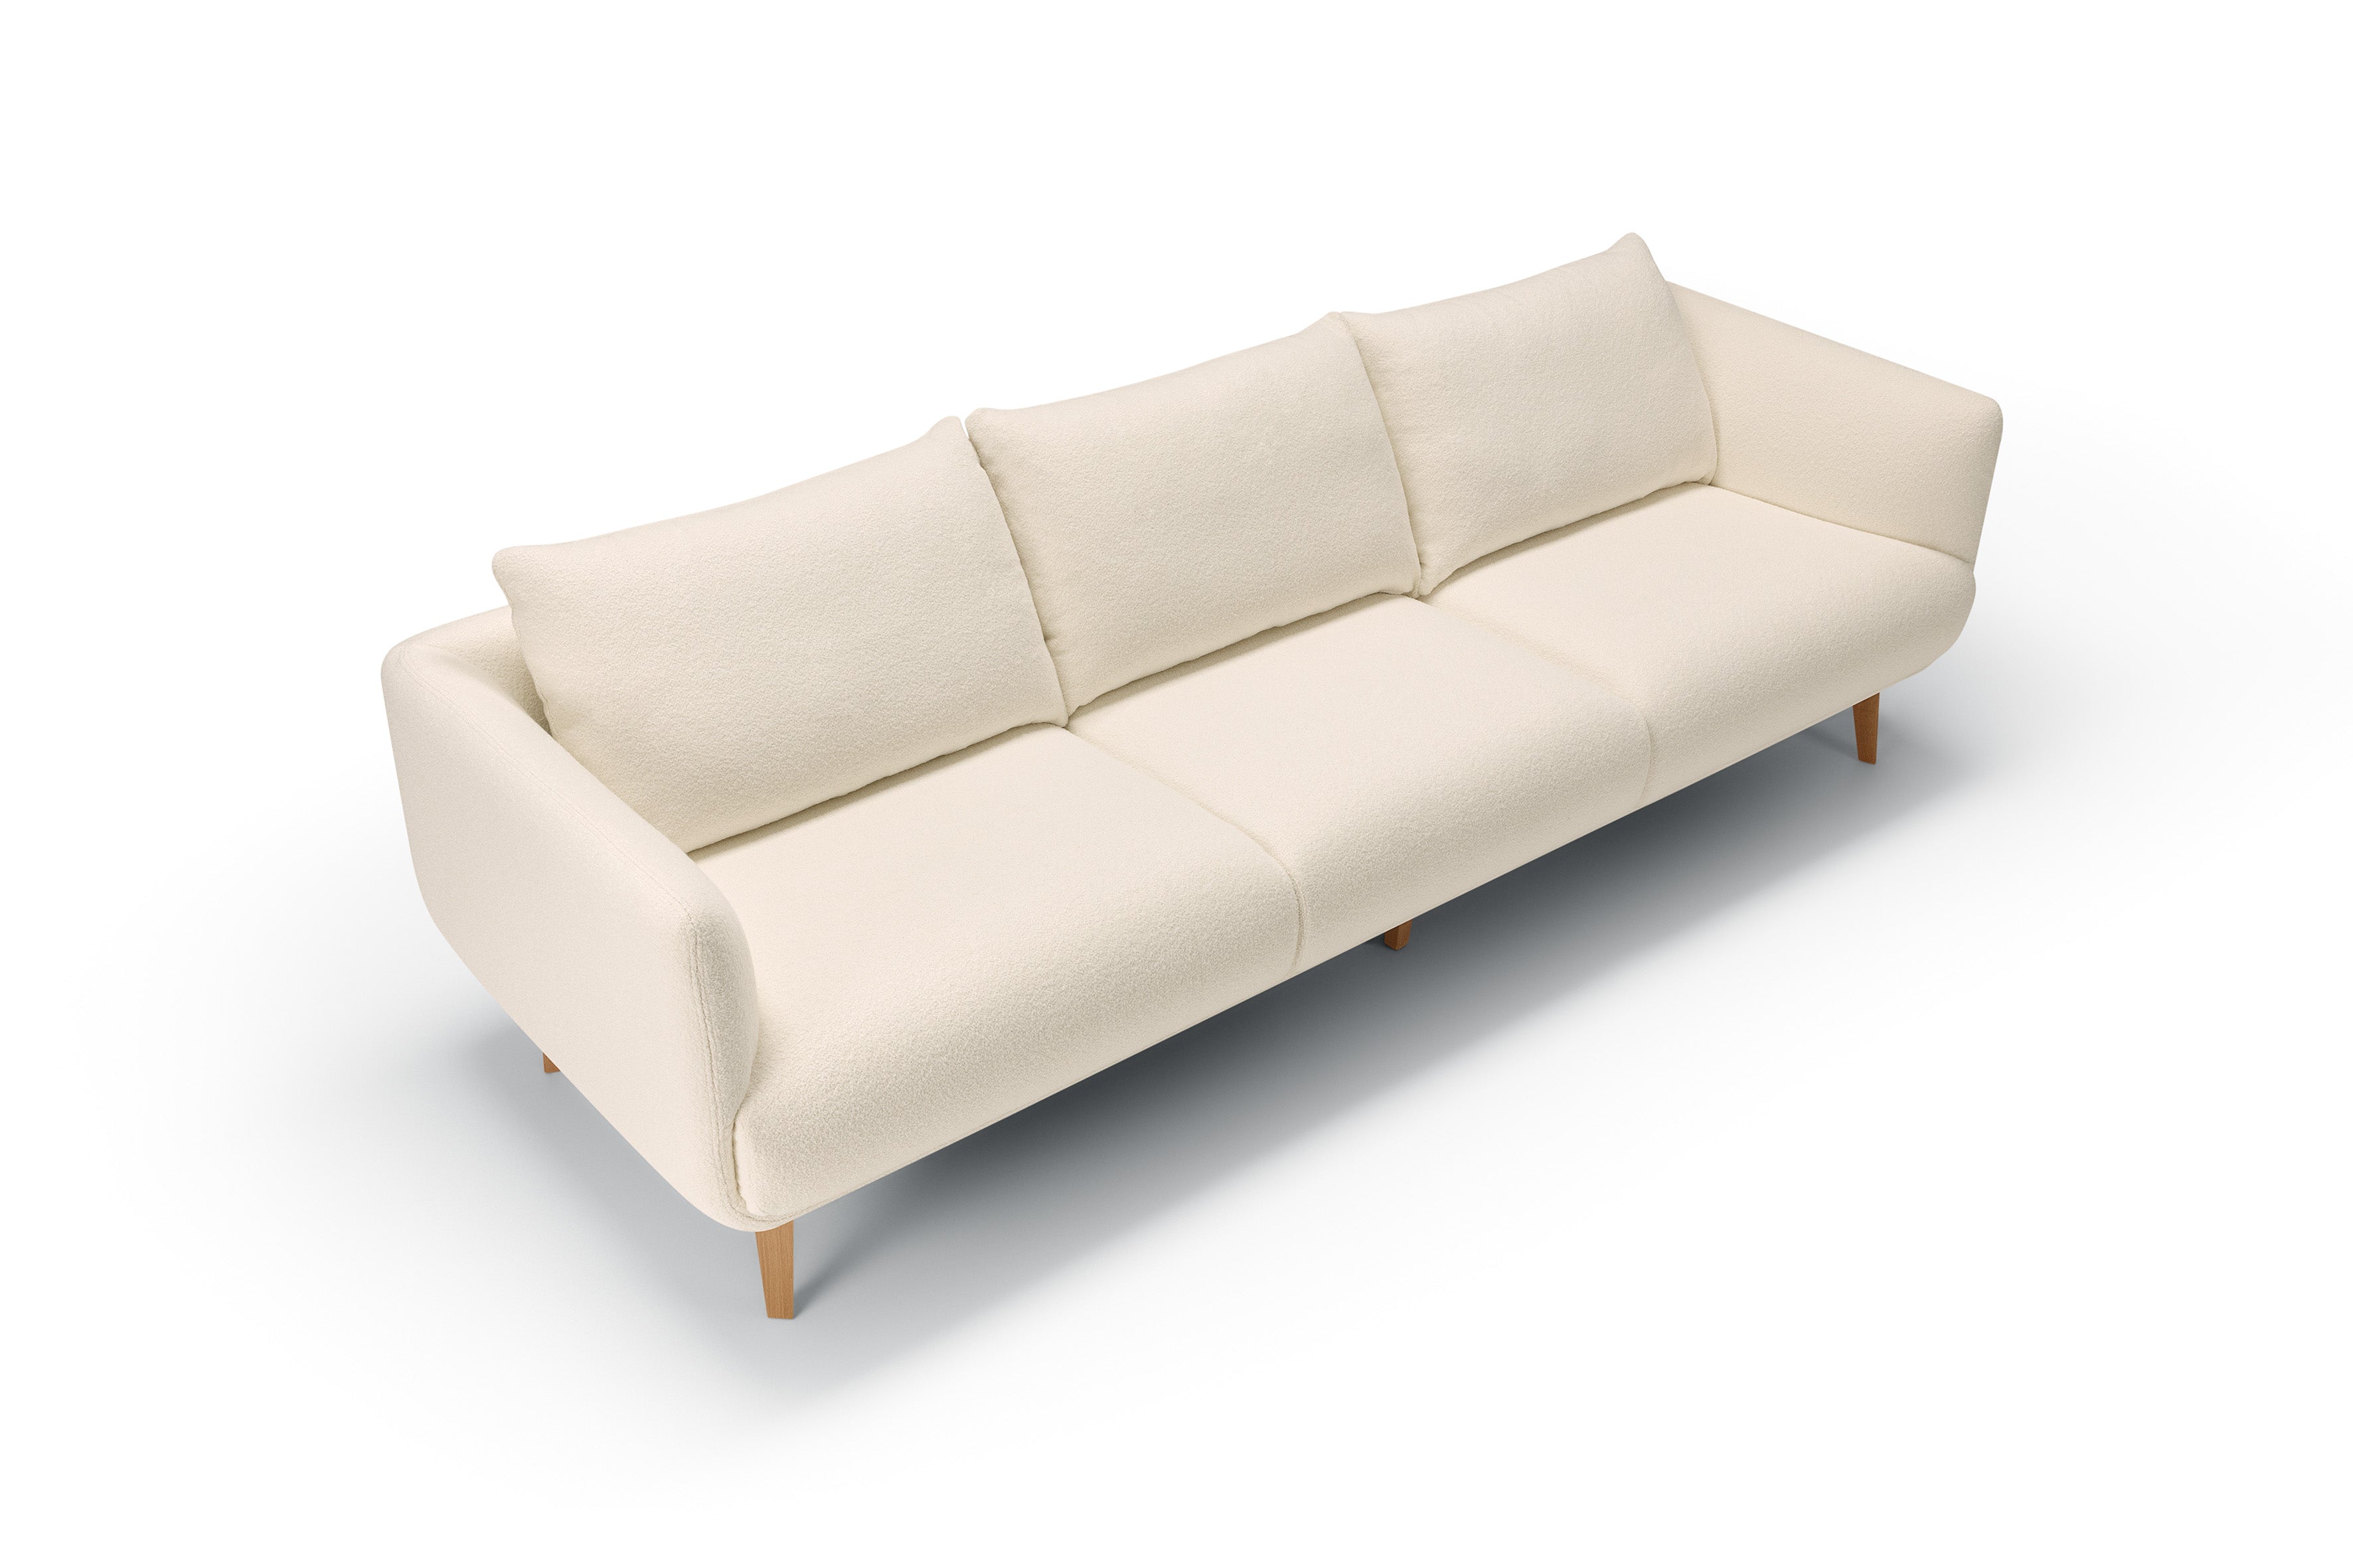 Mastrella Murano 4 Seater Divided Sofa